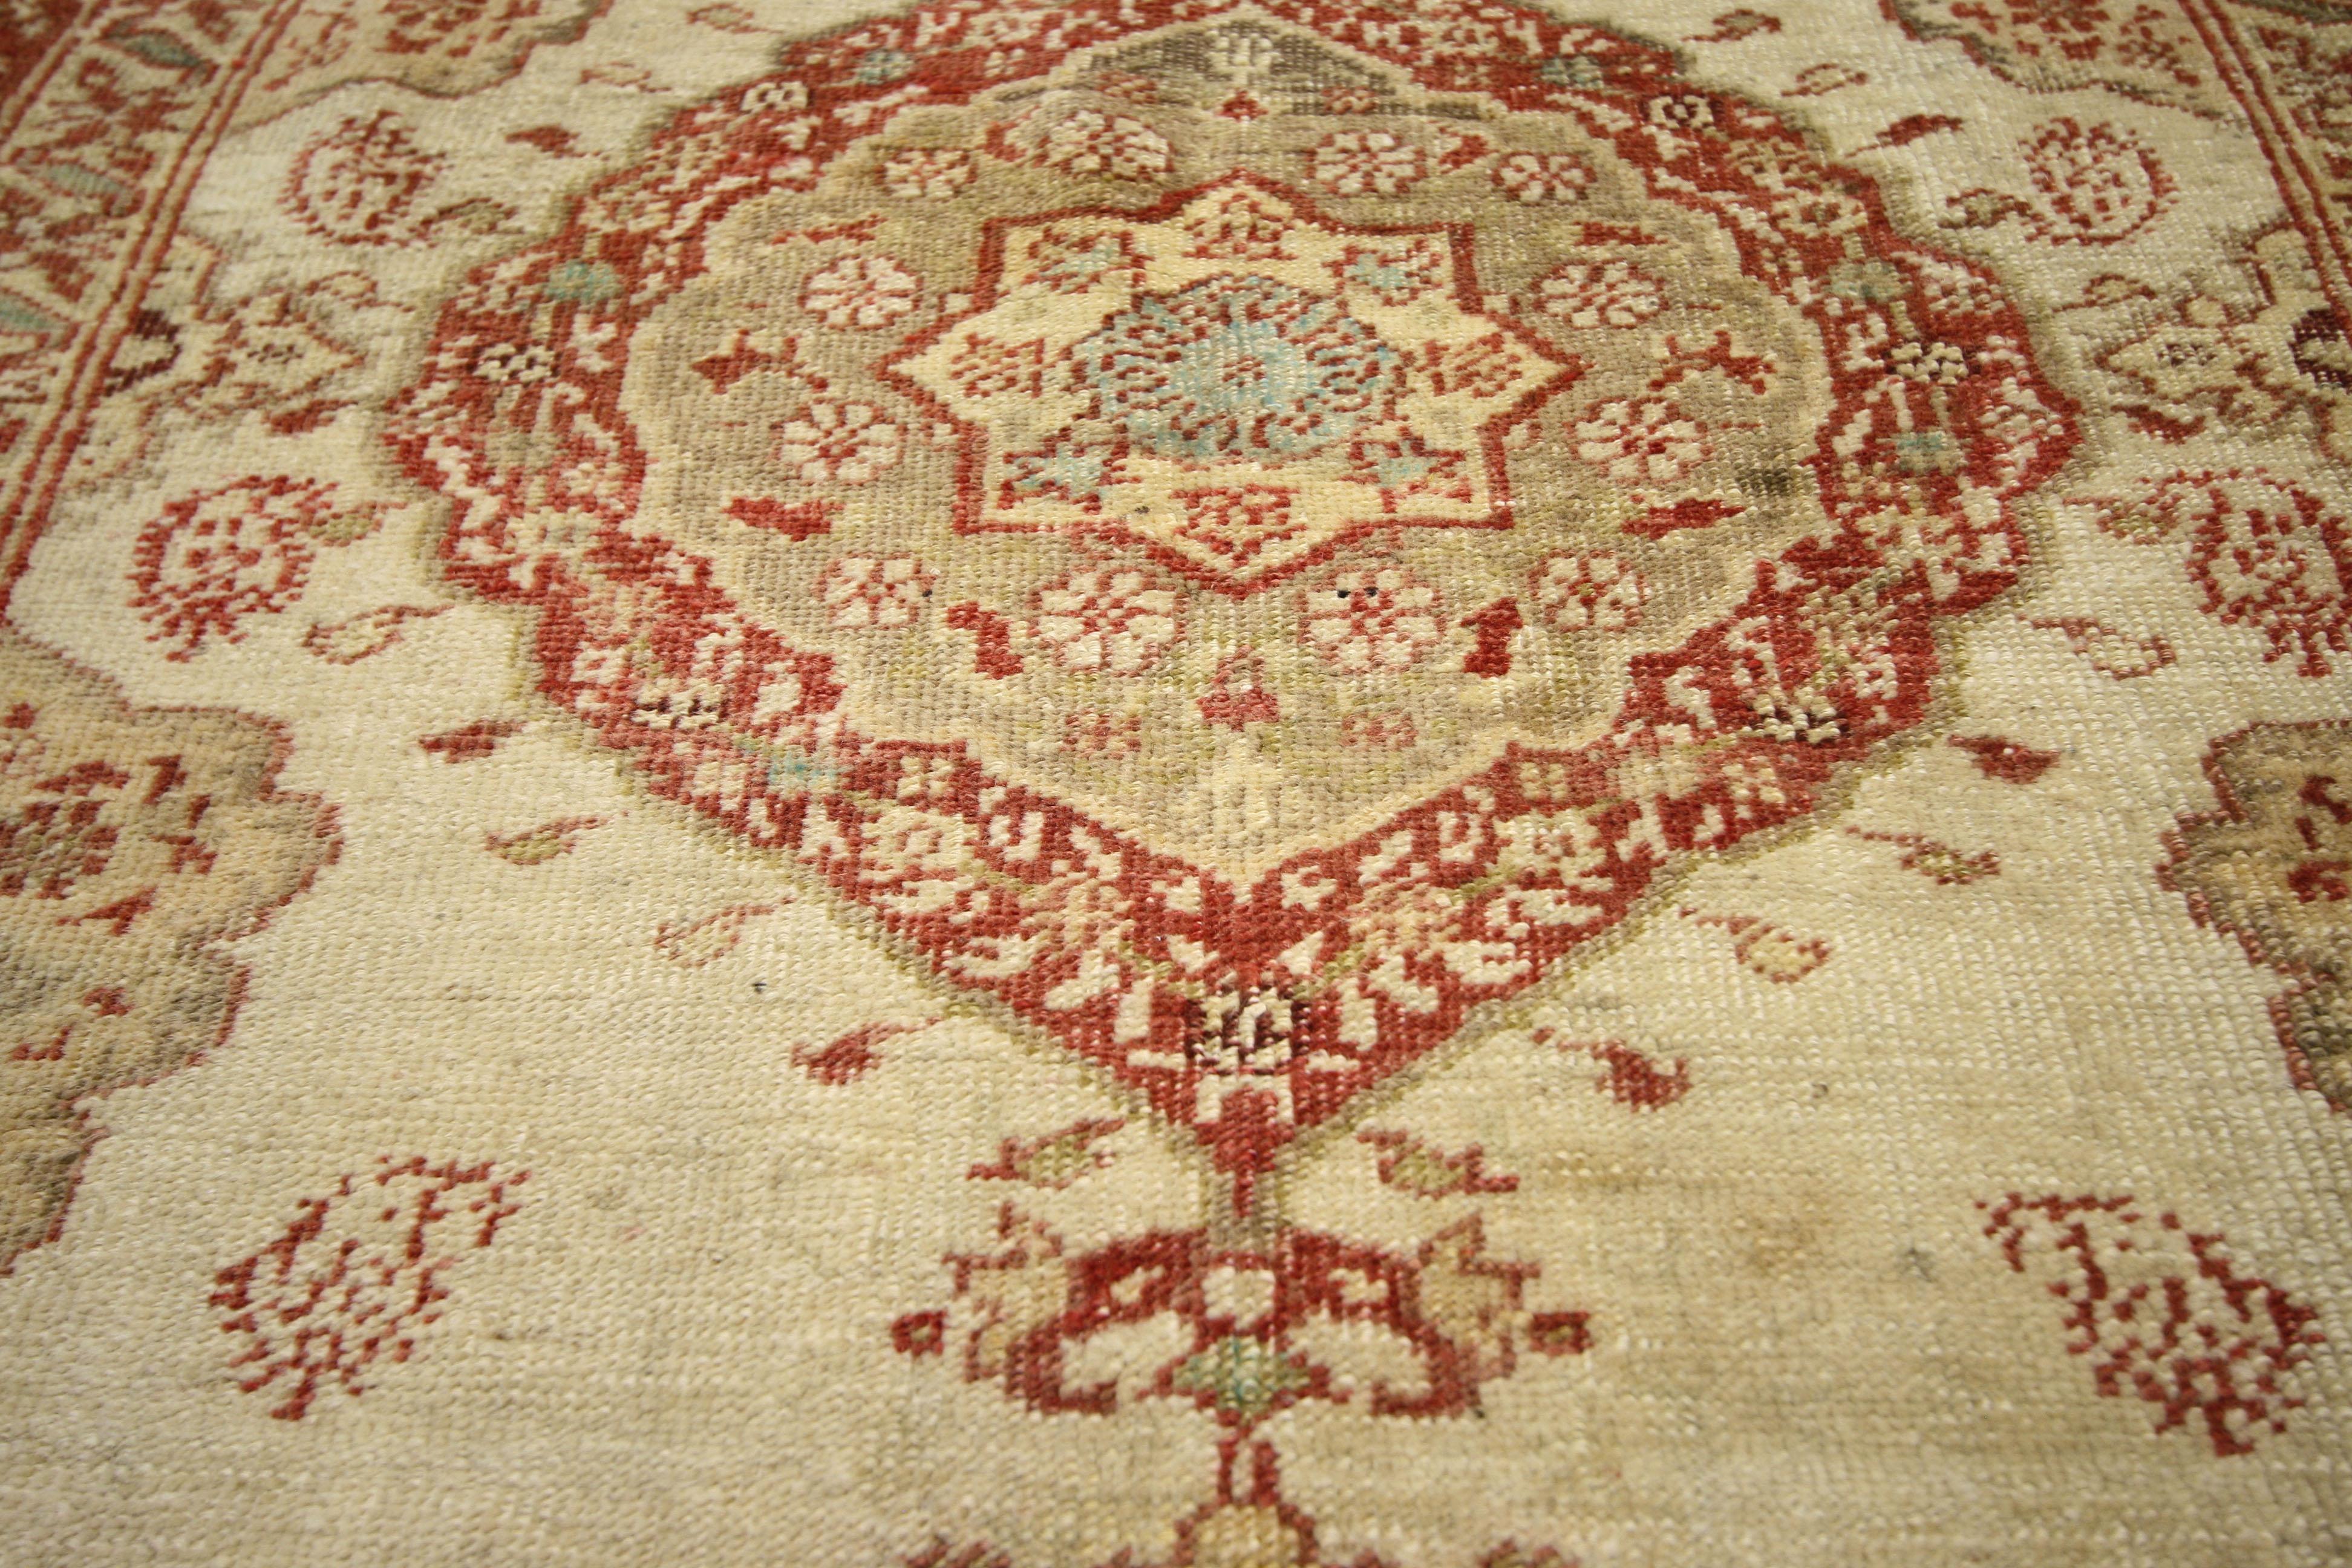 52325, tapis turc Oushak vintage de style rococo français. Le raffinement du Rococo français se marie à l'excellence du tissage turc dans ce magnifique tapis Oushak vintage en laine noué à la main. Un médaillon lobé et pointu ouvre la voie à une